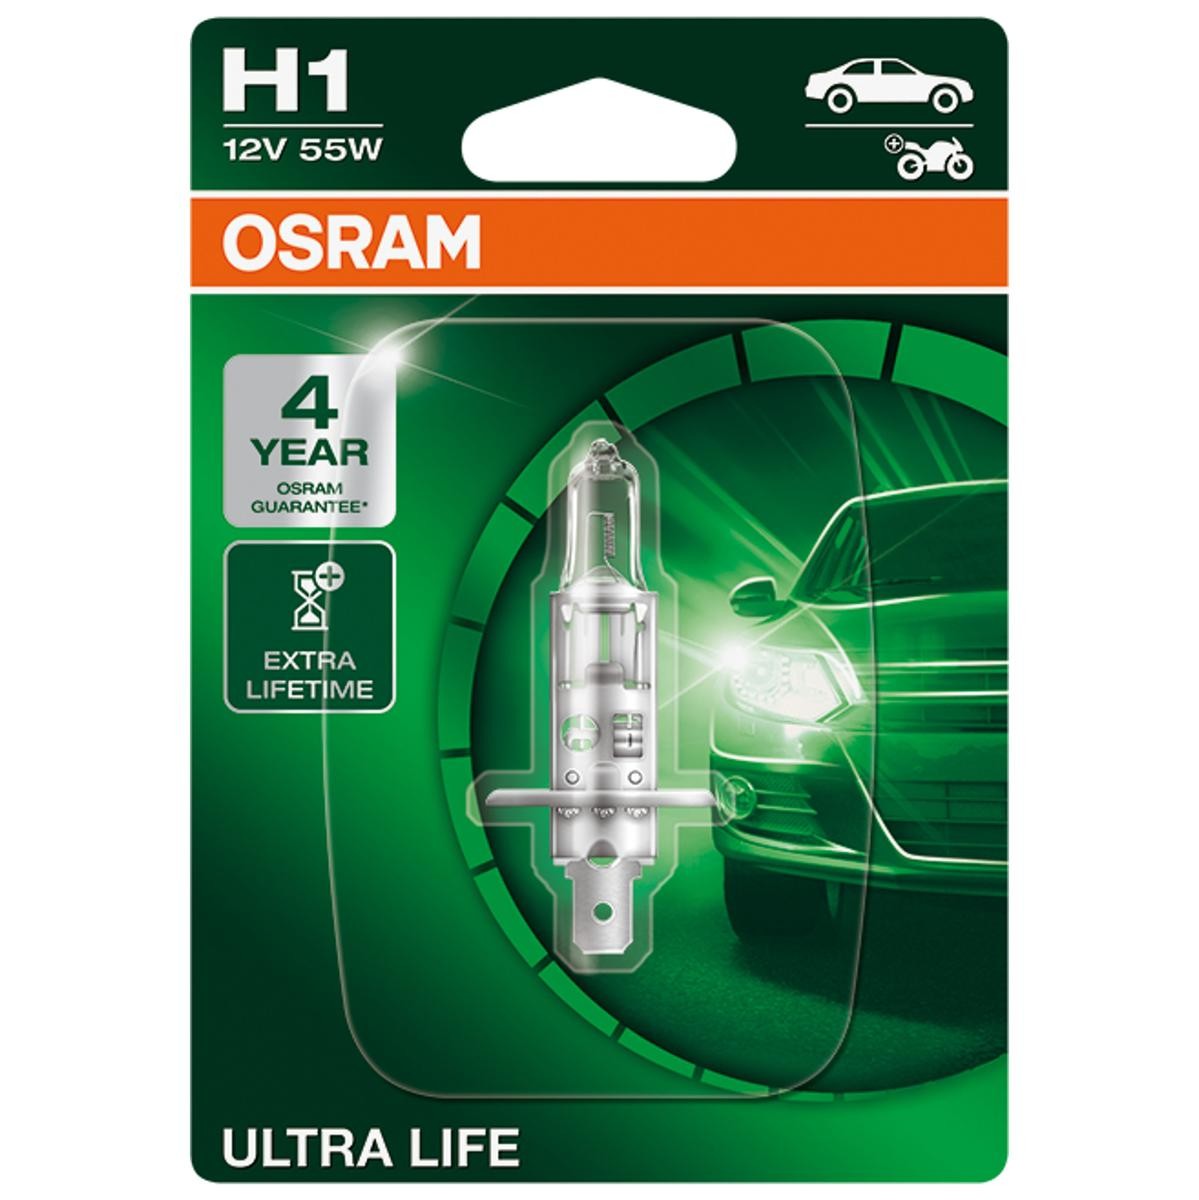 OSRAM ULTRA LIFE 64150ULT-01B Bulb, spotlight H1 12V 55W P14.5s, 3200K, Halogen